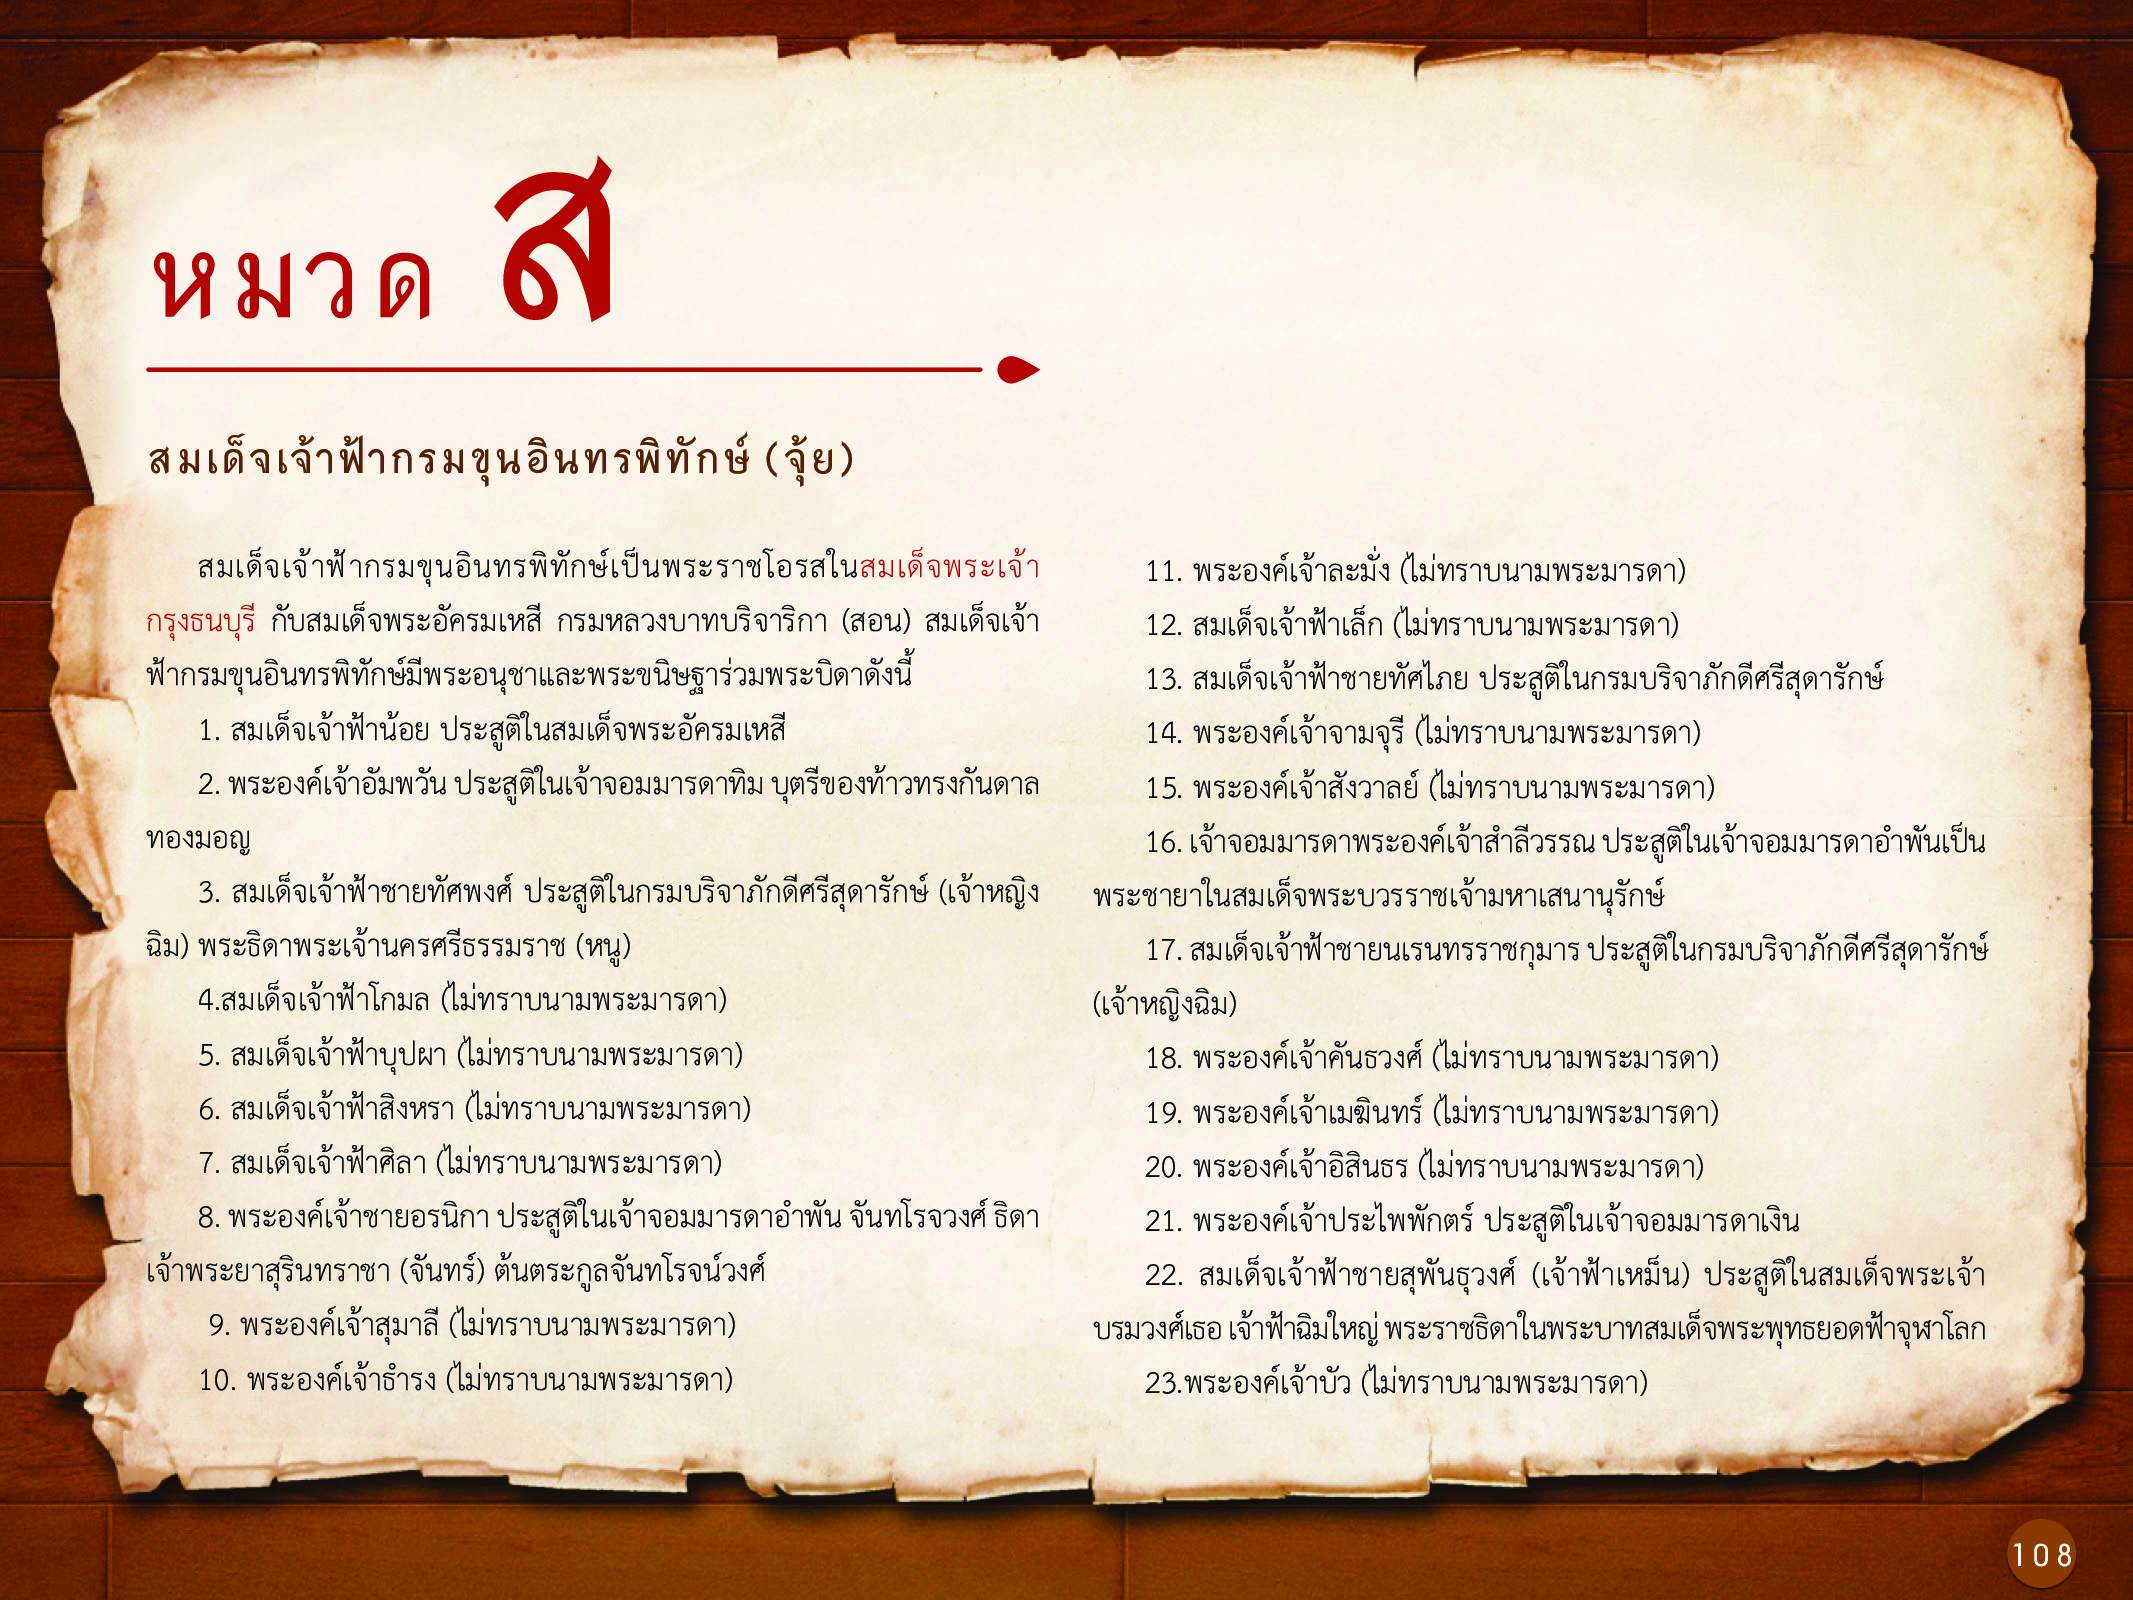 ประวัติศาสตร์กรุงธนบุรี ./images/history_dhonburi/108.jpg